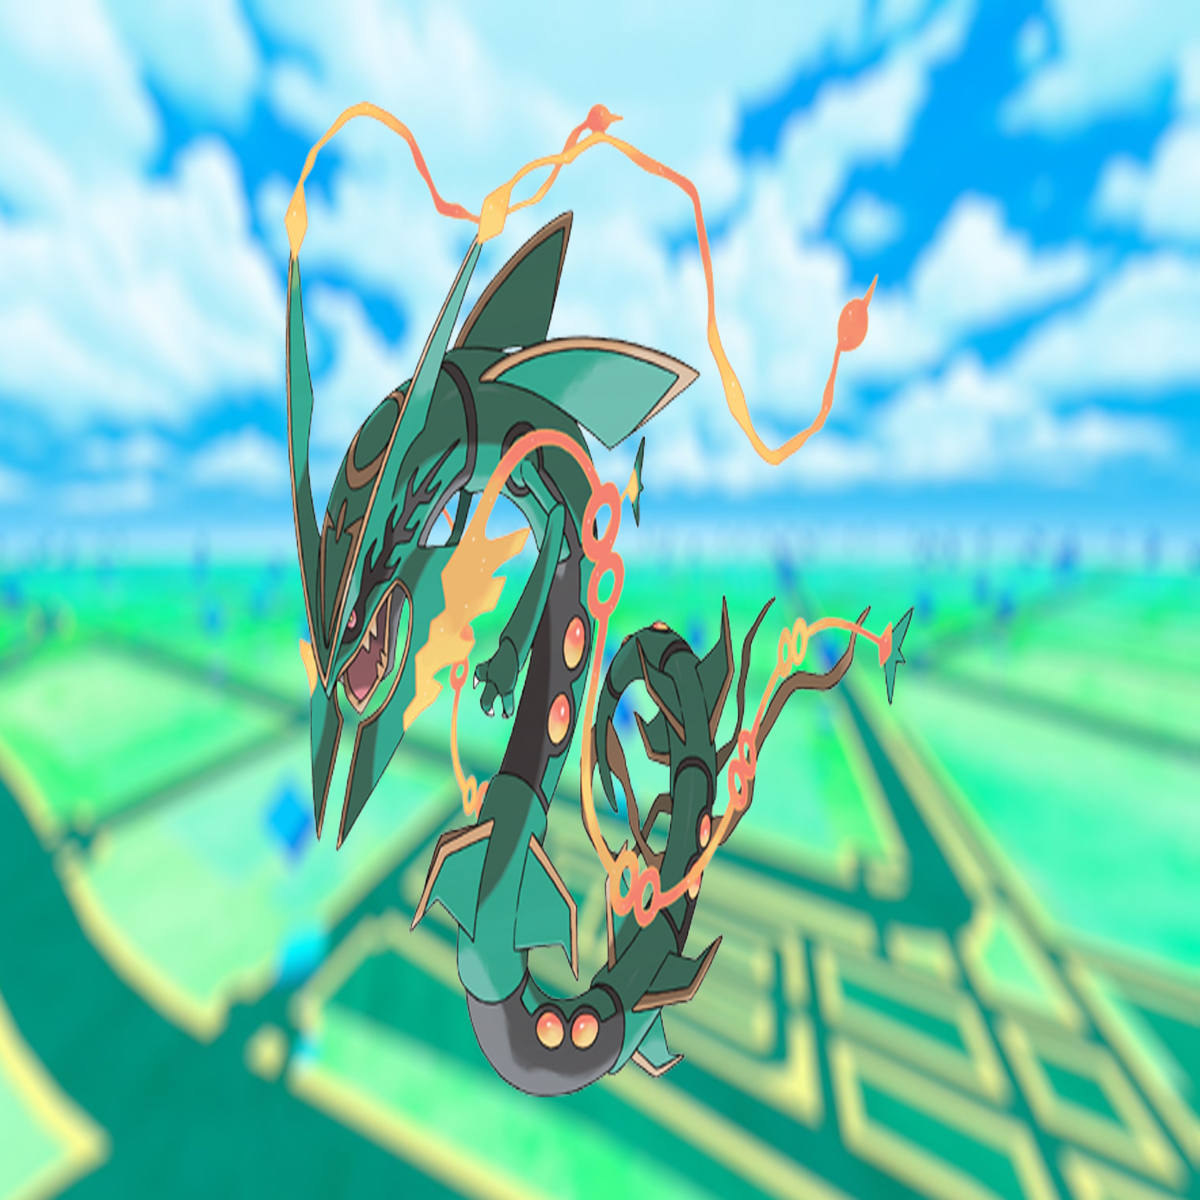 Shiny Hunting Rayquaza : r/PokemonEmerald